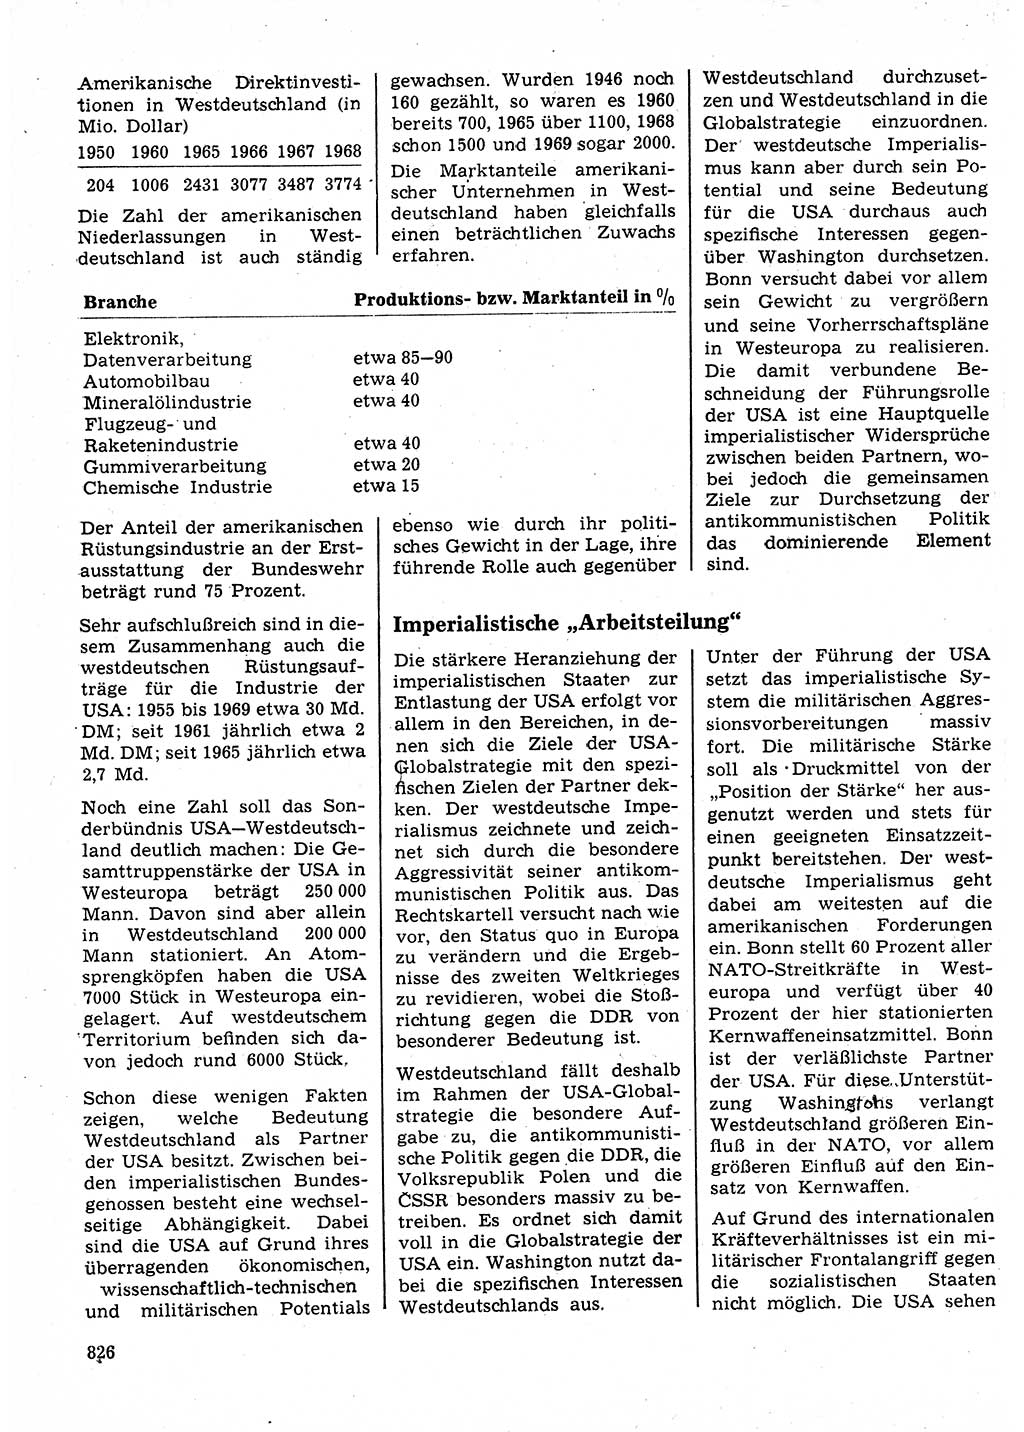 Neuer Weg (NW), Organ des Zentralkomitees (ZK) der SED (Sozialistische Einheitspartei Deutschlands) für Fragen des Parteilebens, 25. Jahrgang [Deutsche Demokratische Republik (DDR)] 1970, Seite 826 (NW ZK SED DDR 1970, S. 826)